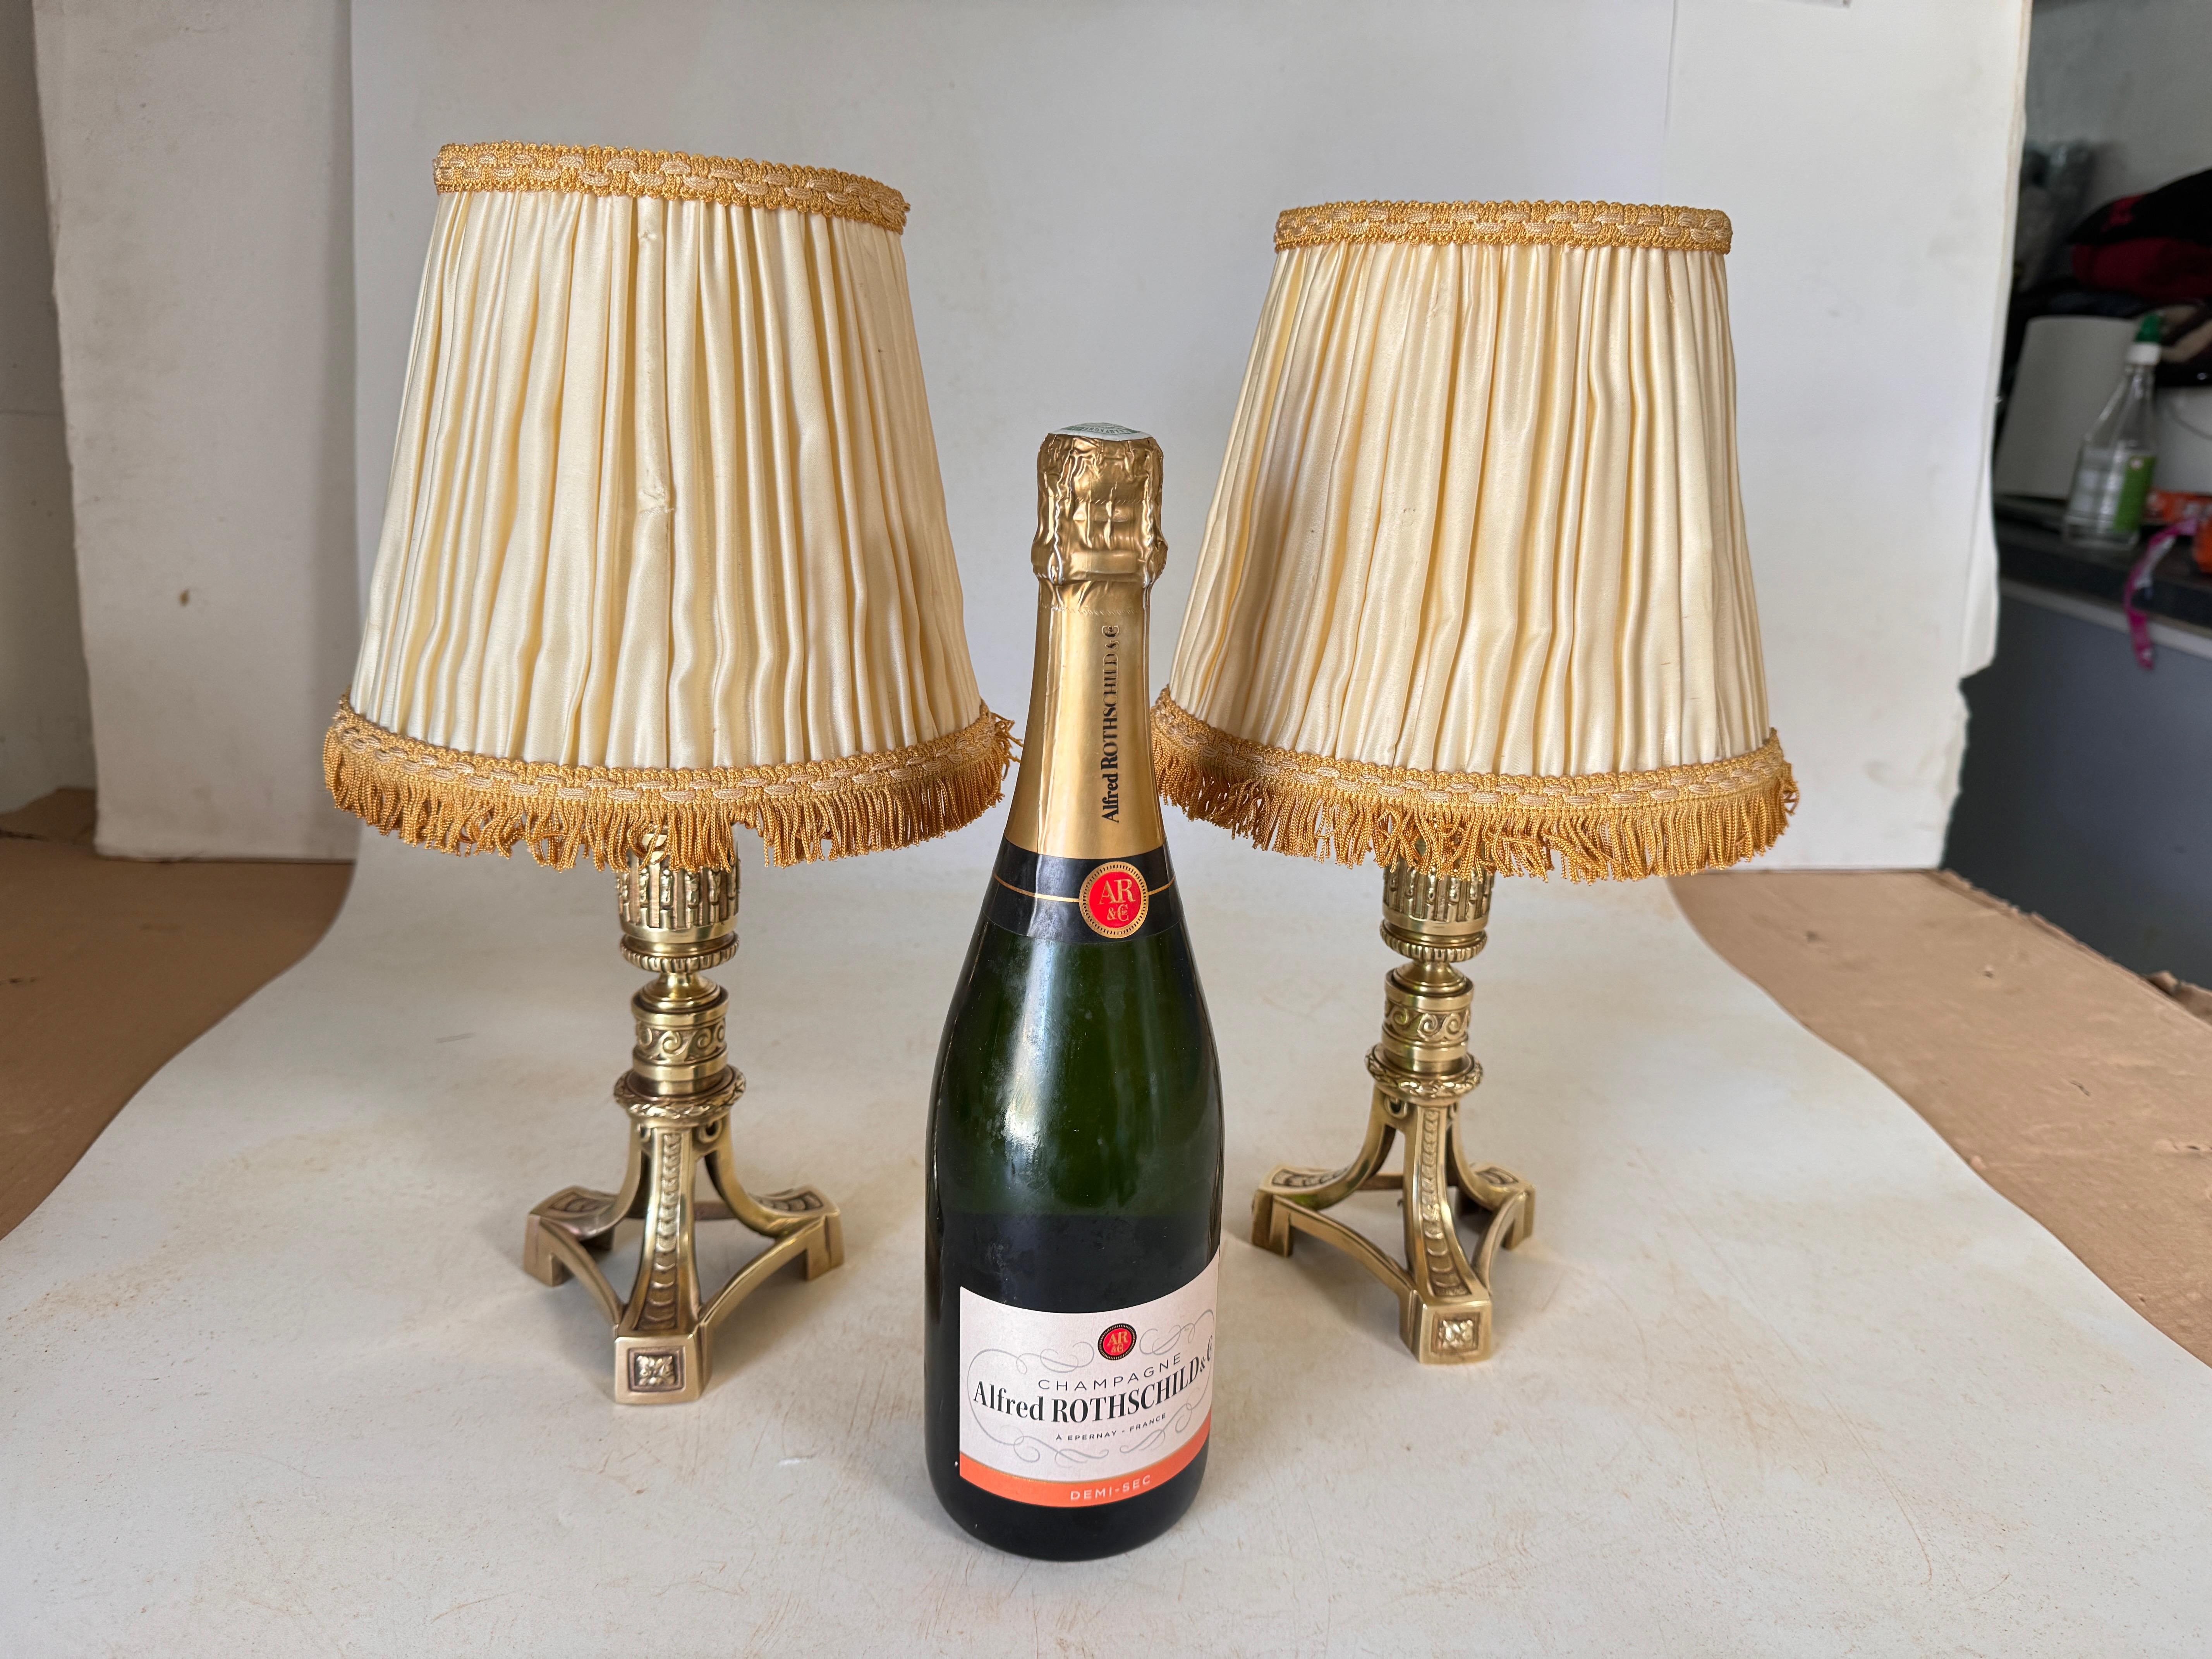 Dieses Paar Tischlampen ist im Stil des Empire gehalten. Sie wurden im 19. Jahrhundert in Frankreich geschaffen und bestehen aus Bronze und Seide für die Schirme. Die Farbe ist Gold, es ist ein Paar von sehr dekorativen Lampe.

Sie sollen neu